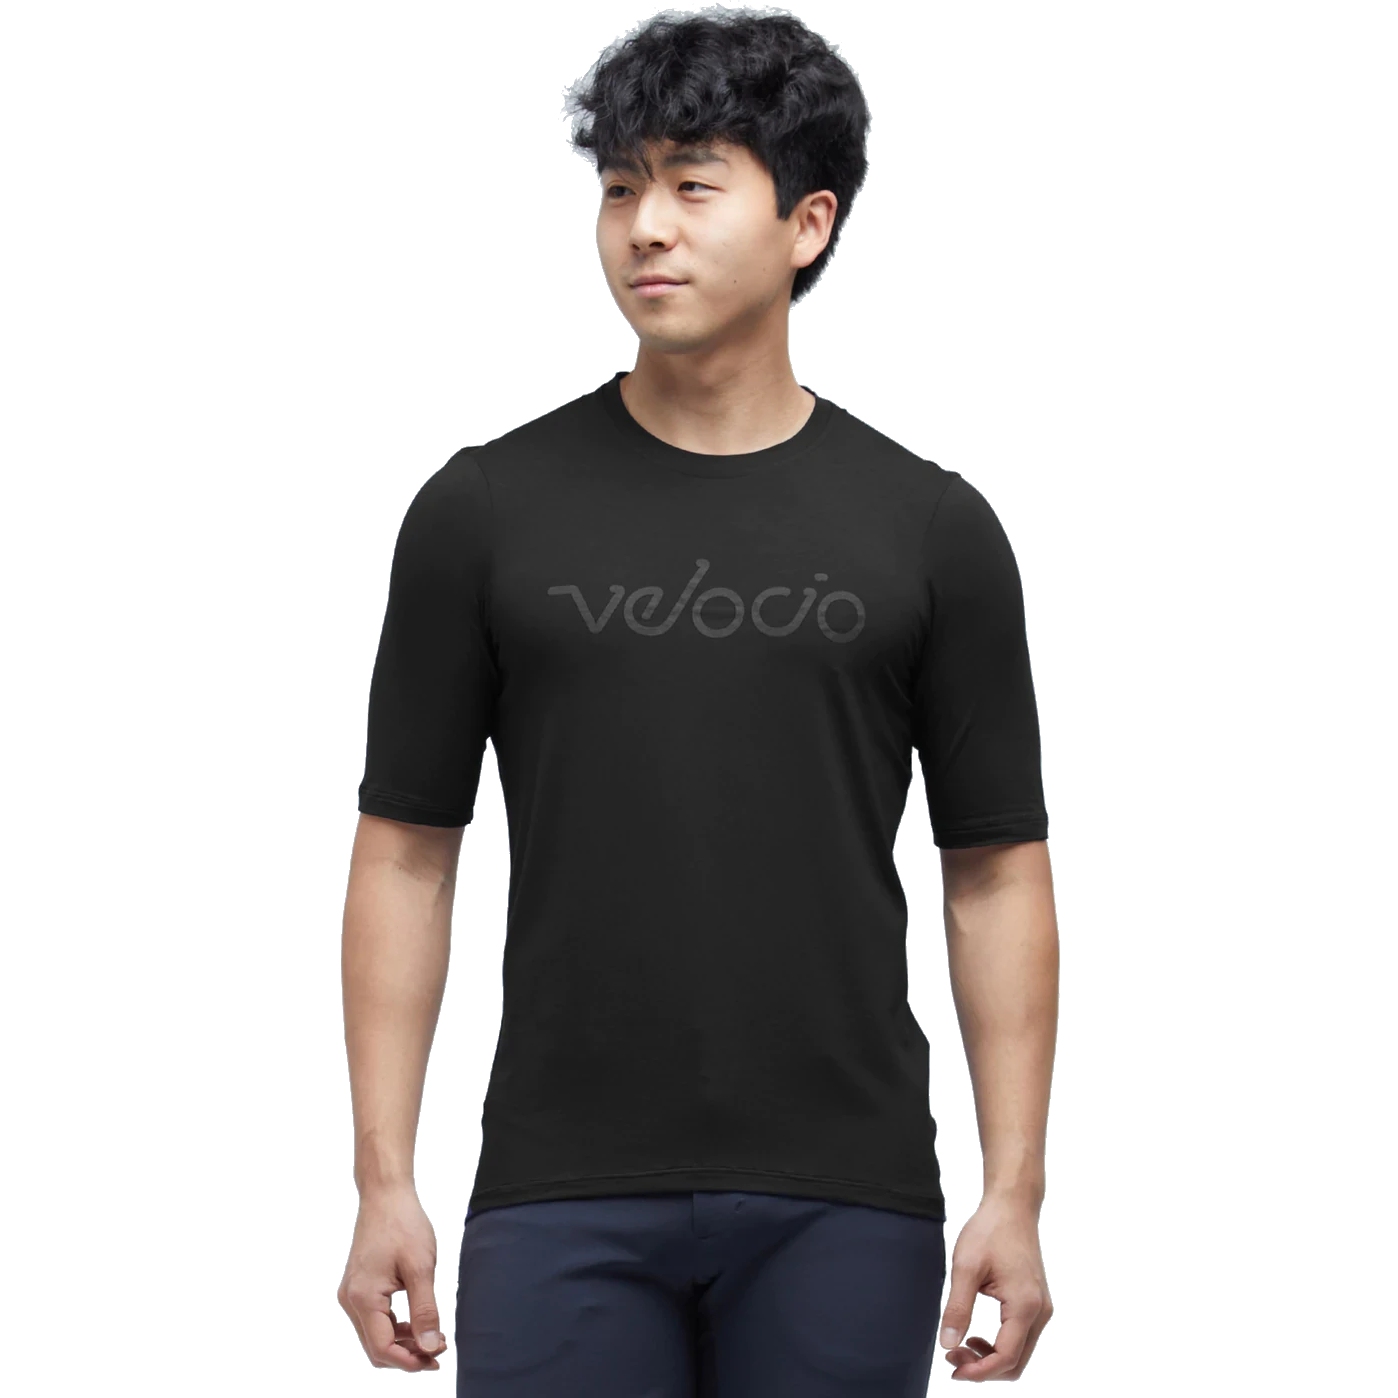 Bild von Velocio Modal Herren T-Shirt - Charcoal